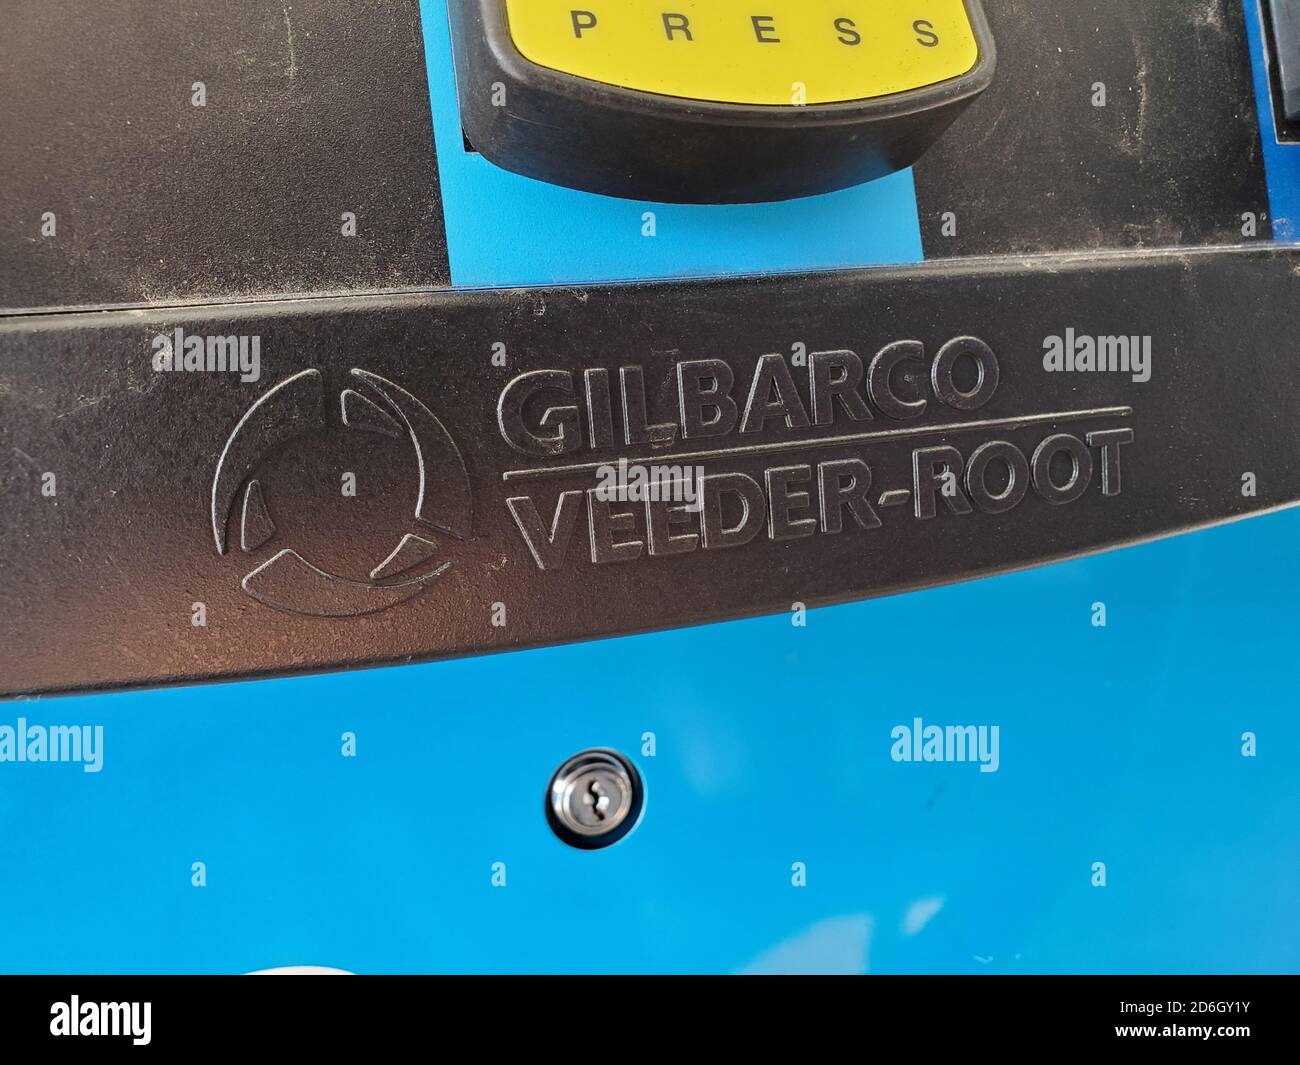 Logo per il fornitore di attrezzature Gilbarco veeder-root sulla pompa carburante, San Ramon, California, 28 agosto 2020. () Foto Stock